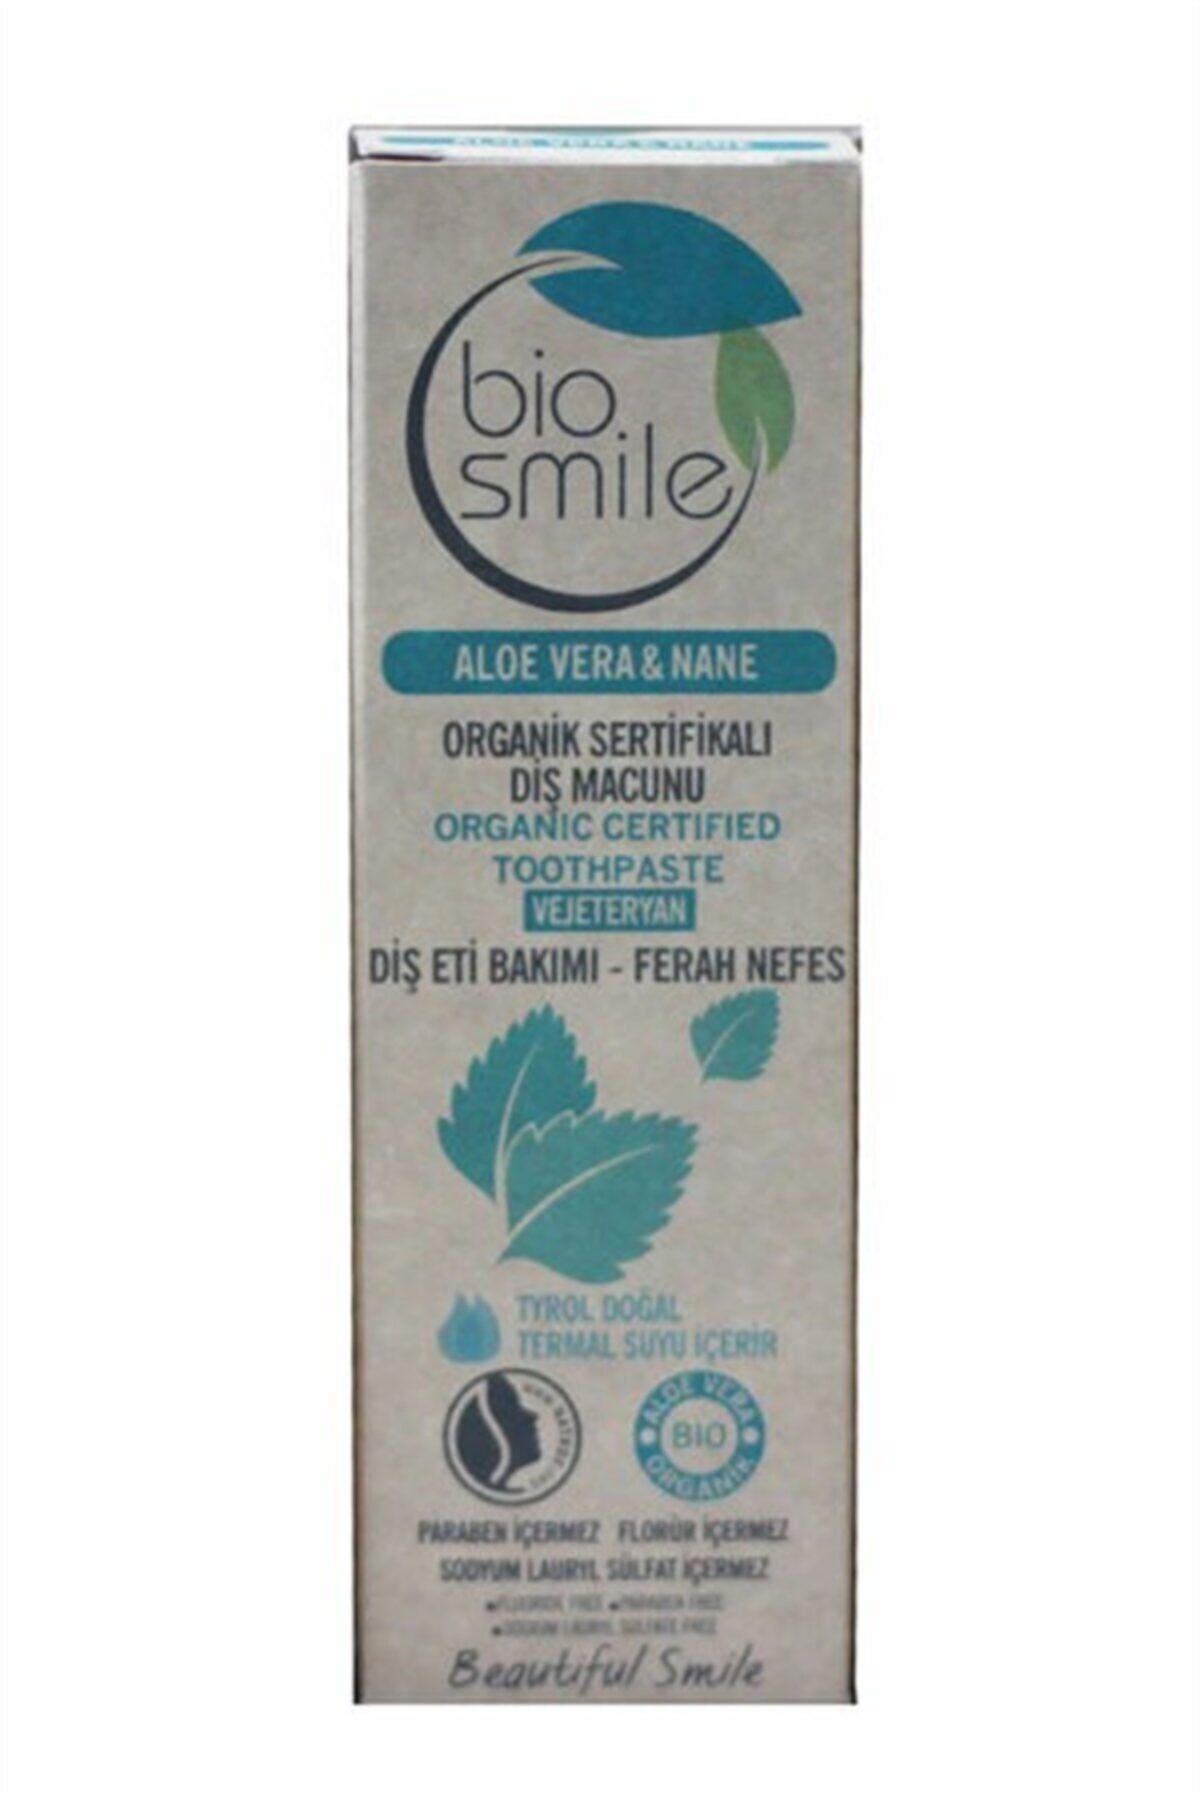 Smiley Baby Biosmile Organik Diş Macunu Aloe Vera & Nane Aromalı 50ml